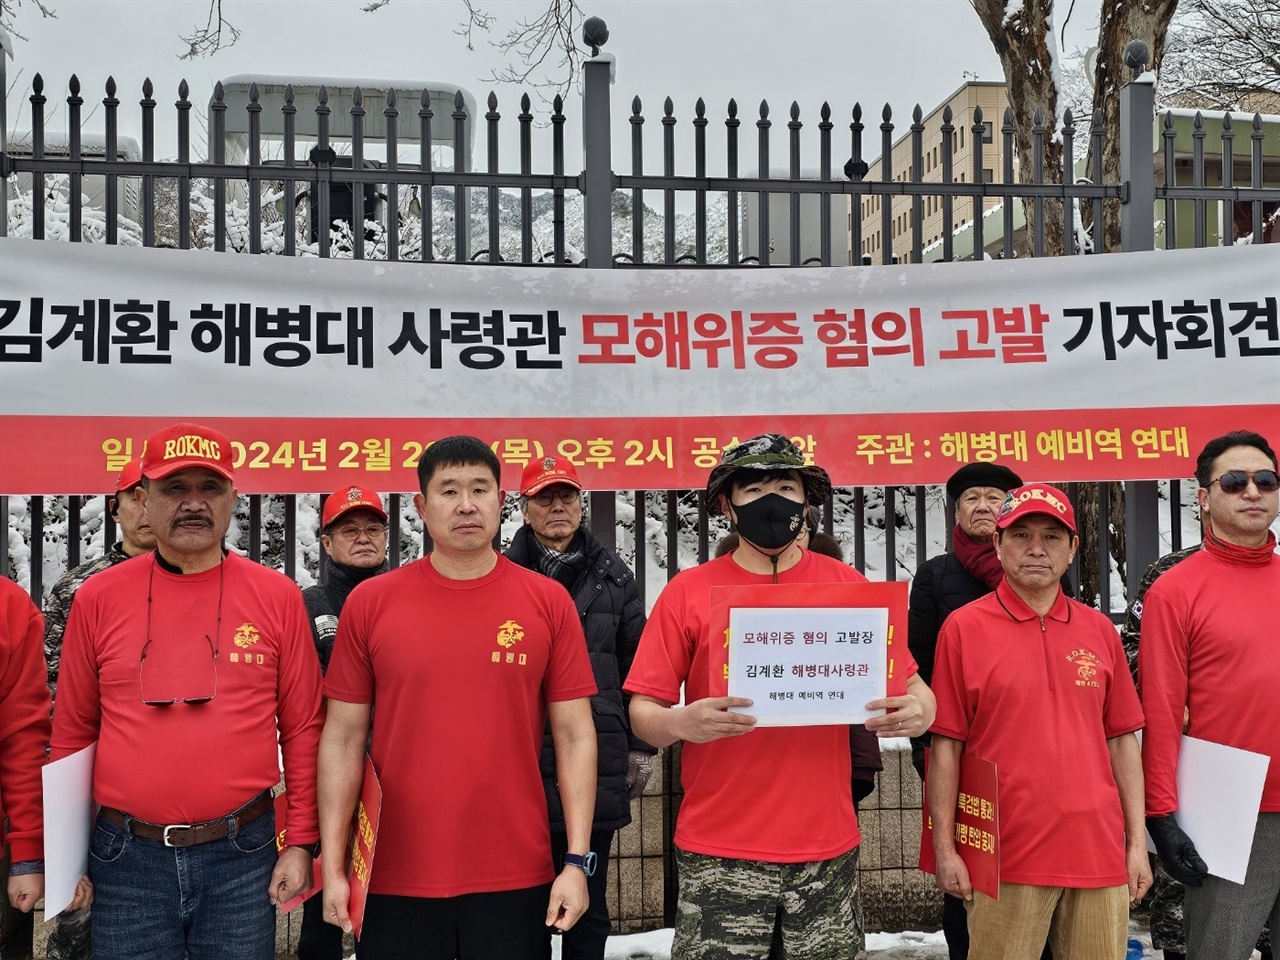 해병대 예비역 연대는 28일 김계환 해병대사령관을 모해위증 혐의로 공수처에 고발했다.